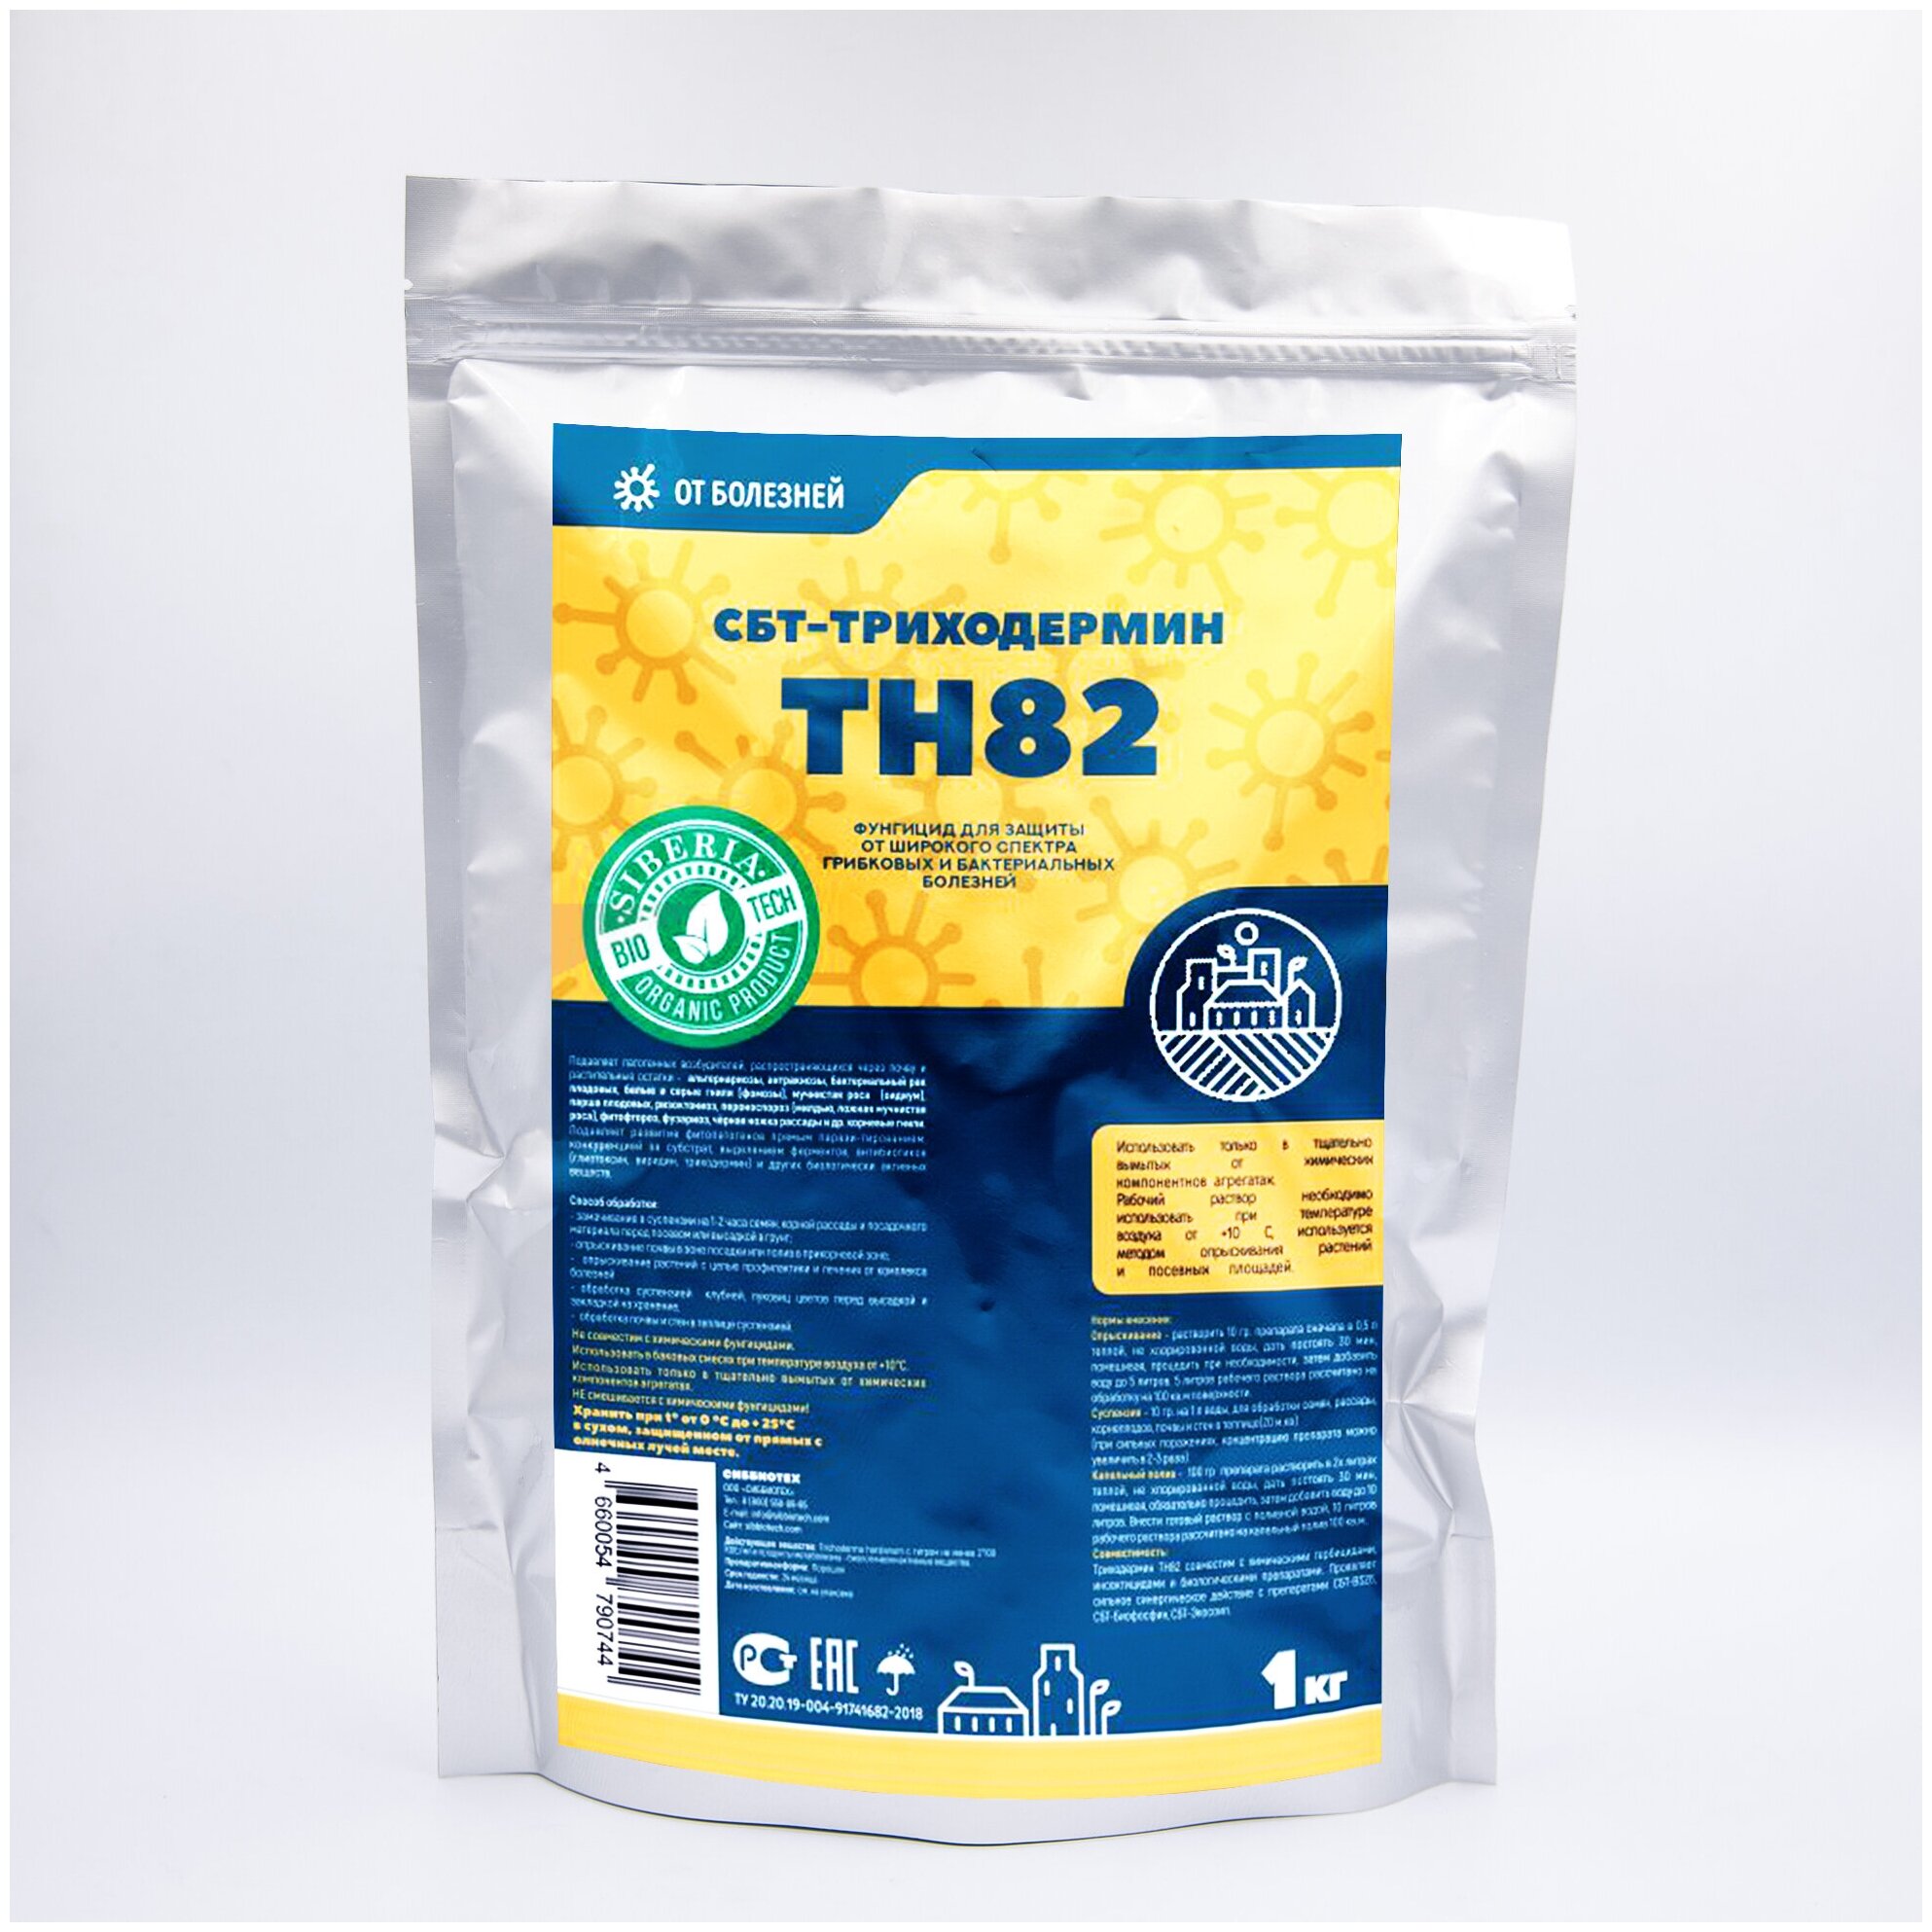 СБТ-Триходермин биофунгицид для защиты от грибных и бактериальных болезней садовых растений